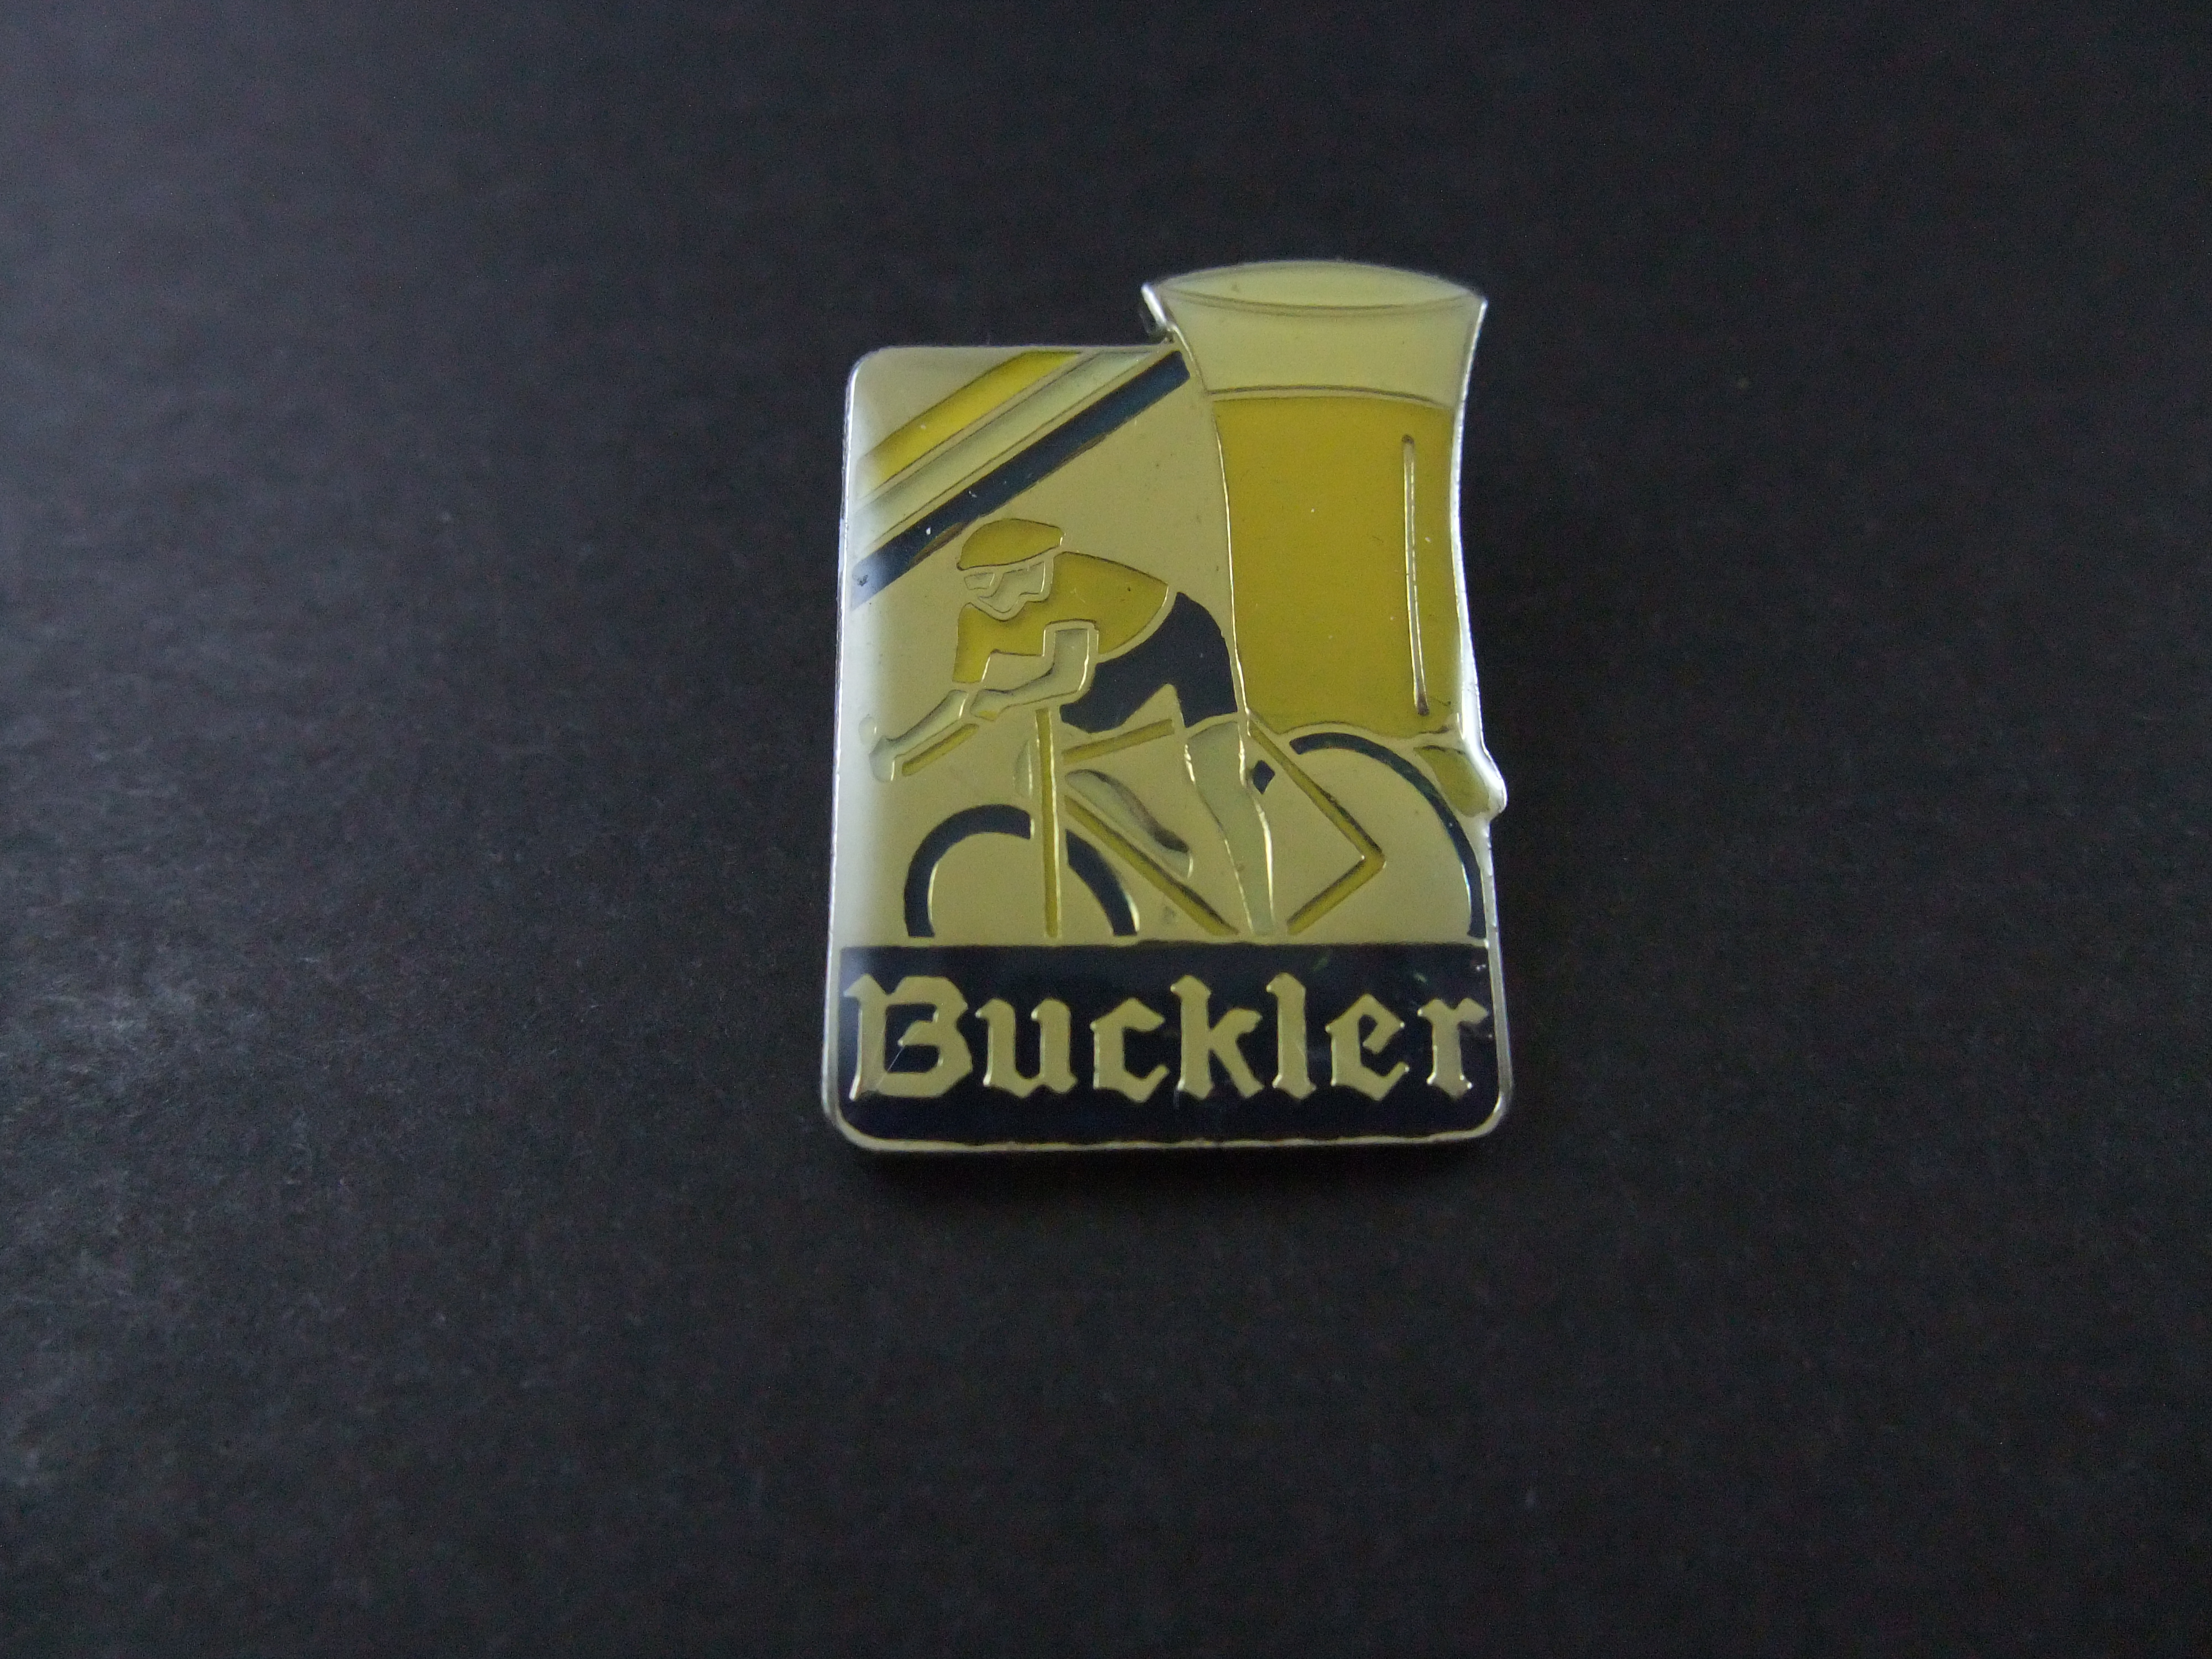 Buckler alcoholvrij bier ( gebrouwen door Heineken ) sponsor van de Tour de France wielrennen